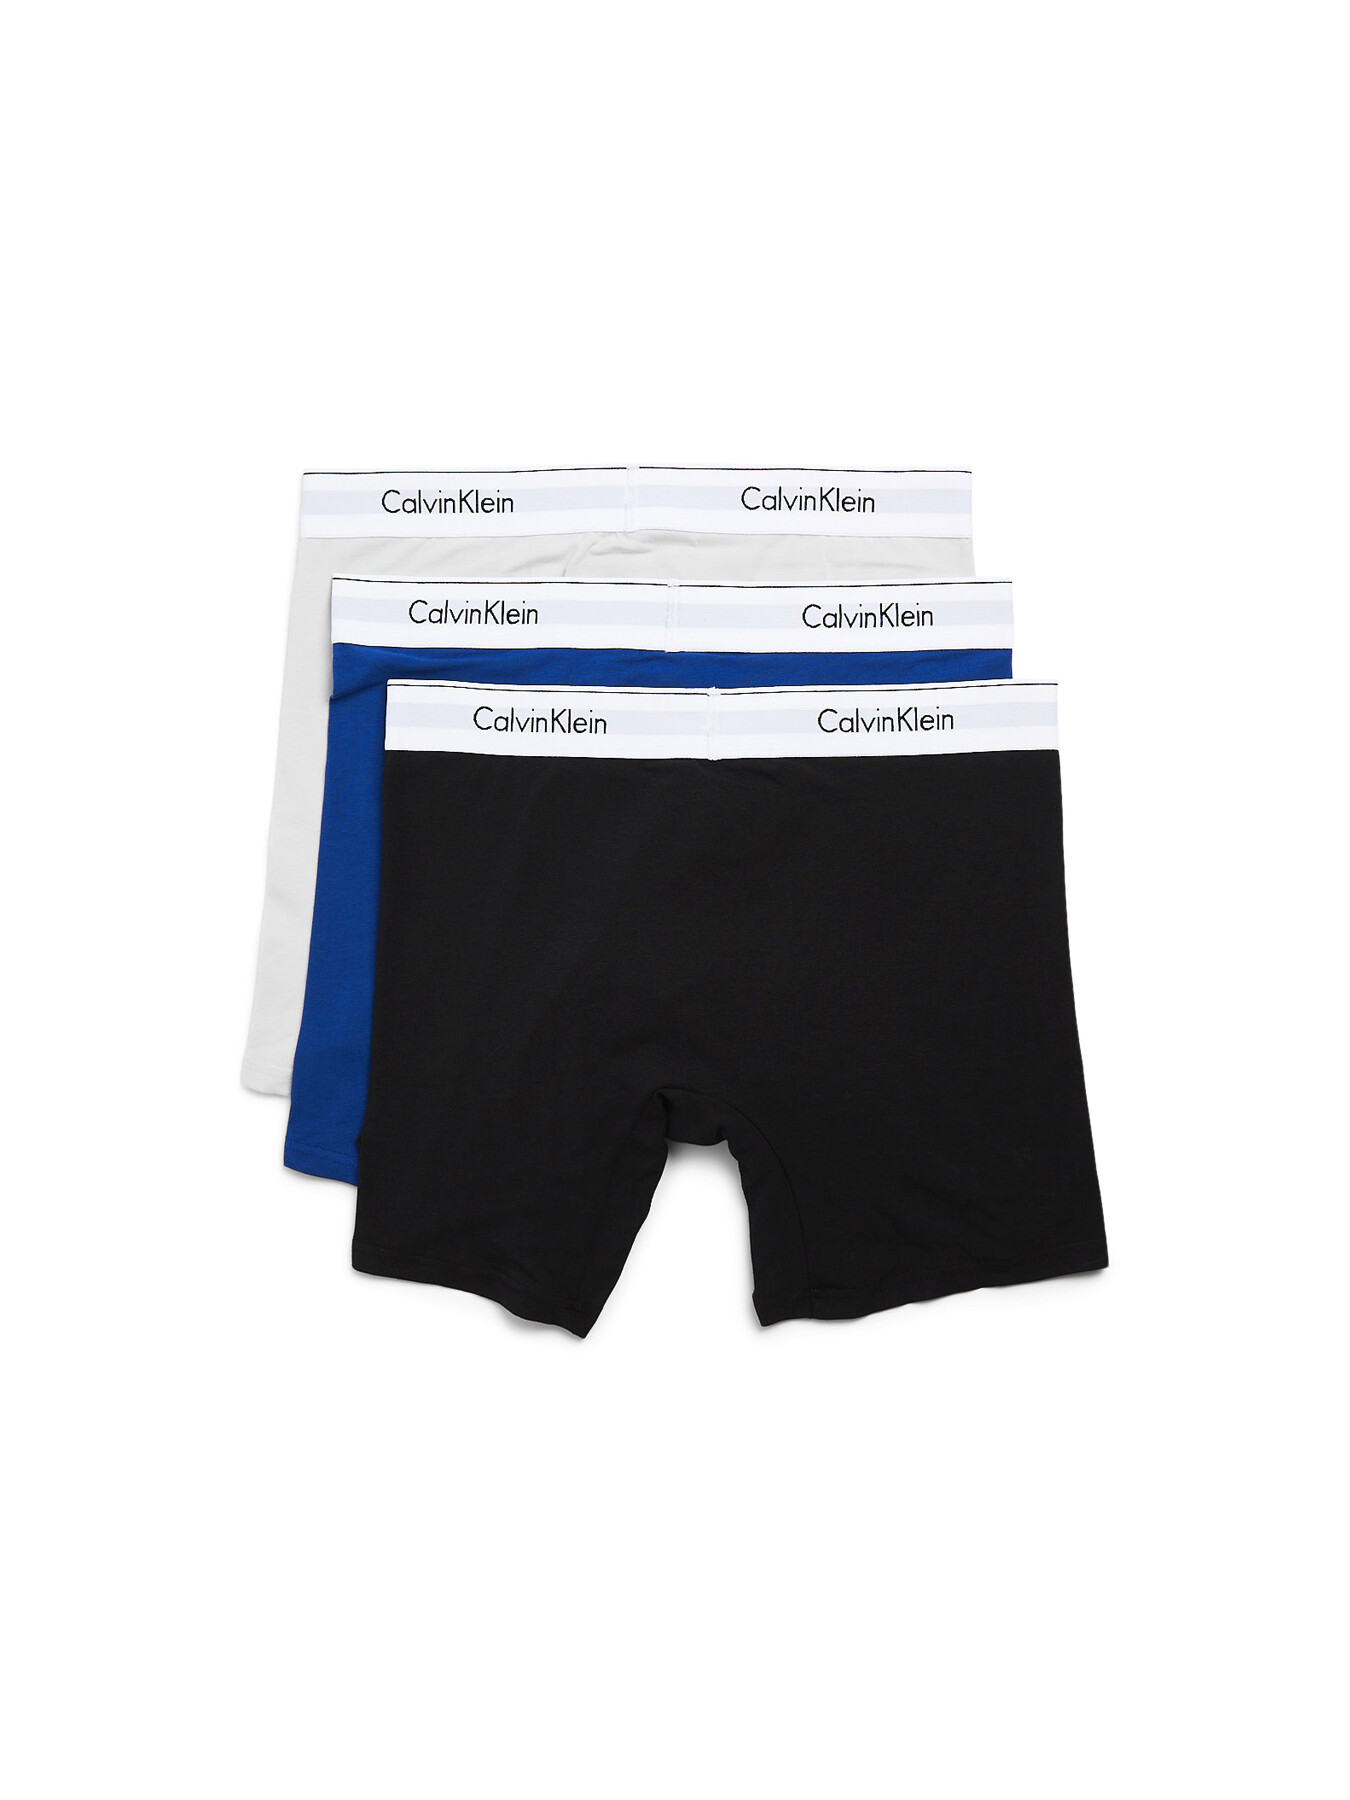 Calvin Klein BLUE MULTI Men's 3-Pack Cotton Classics Boxer Briefs, US Large  